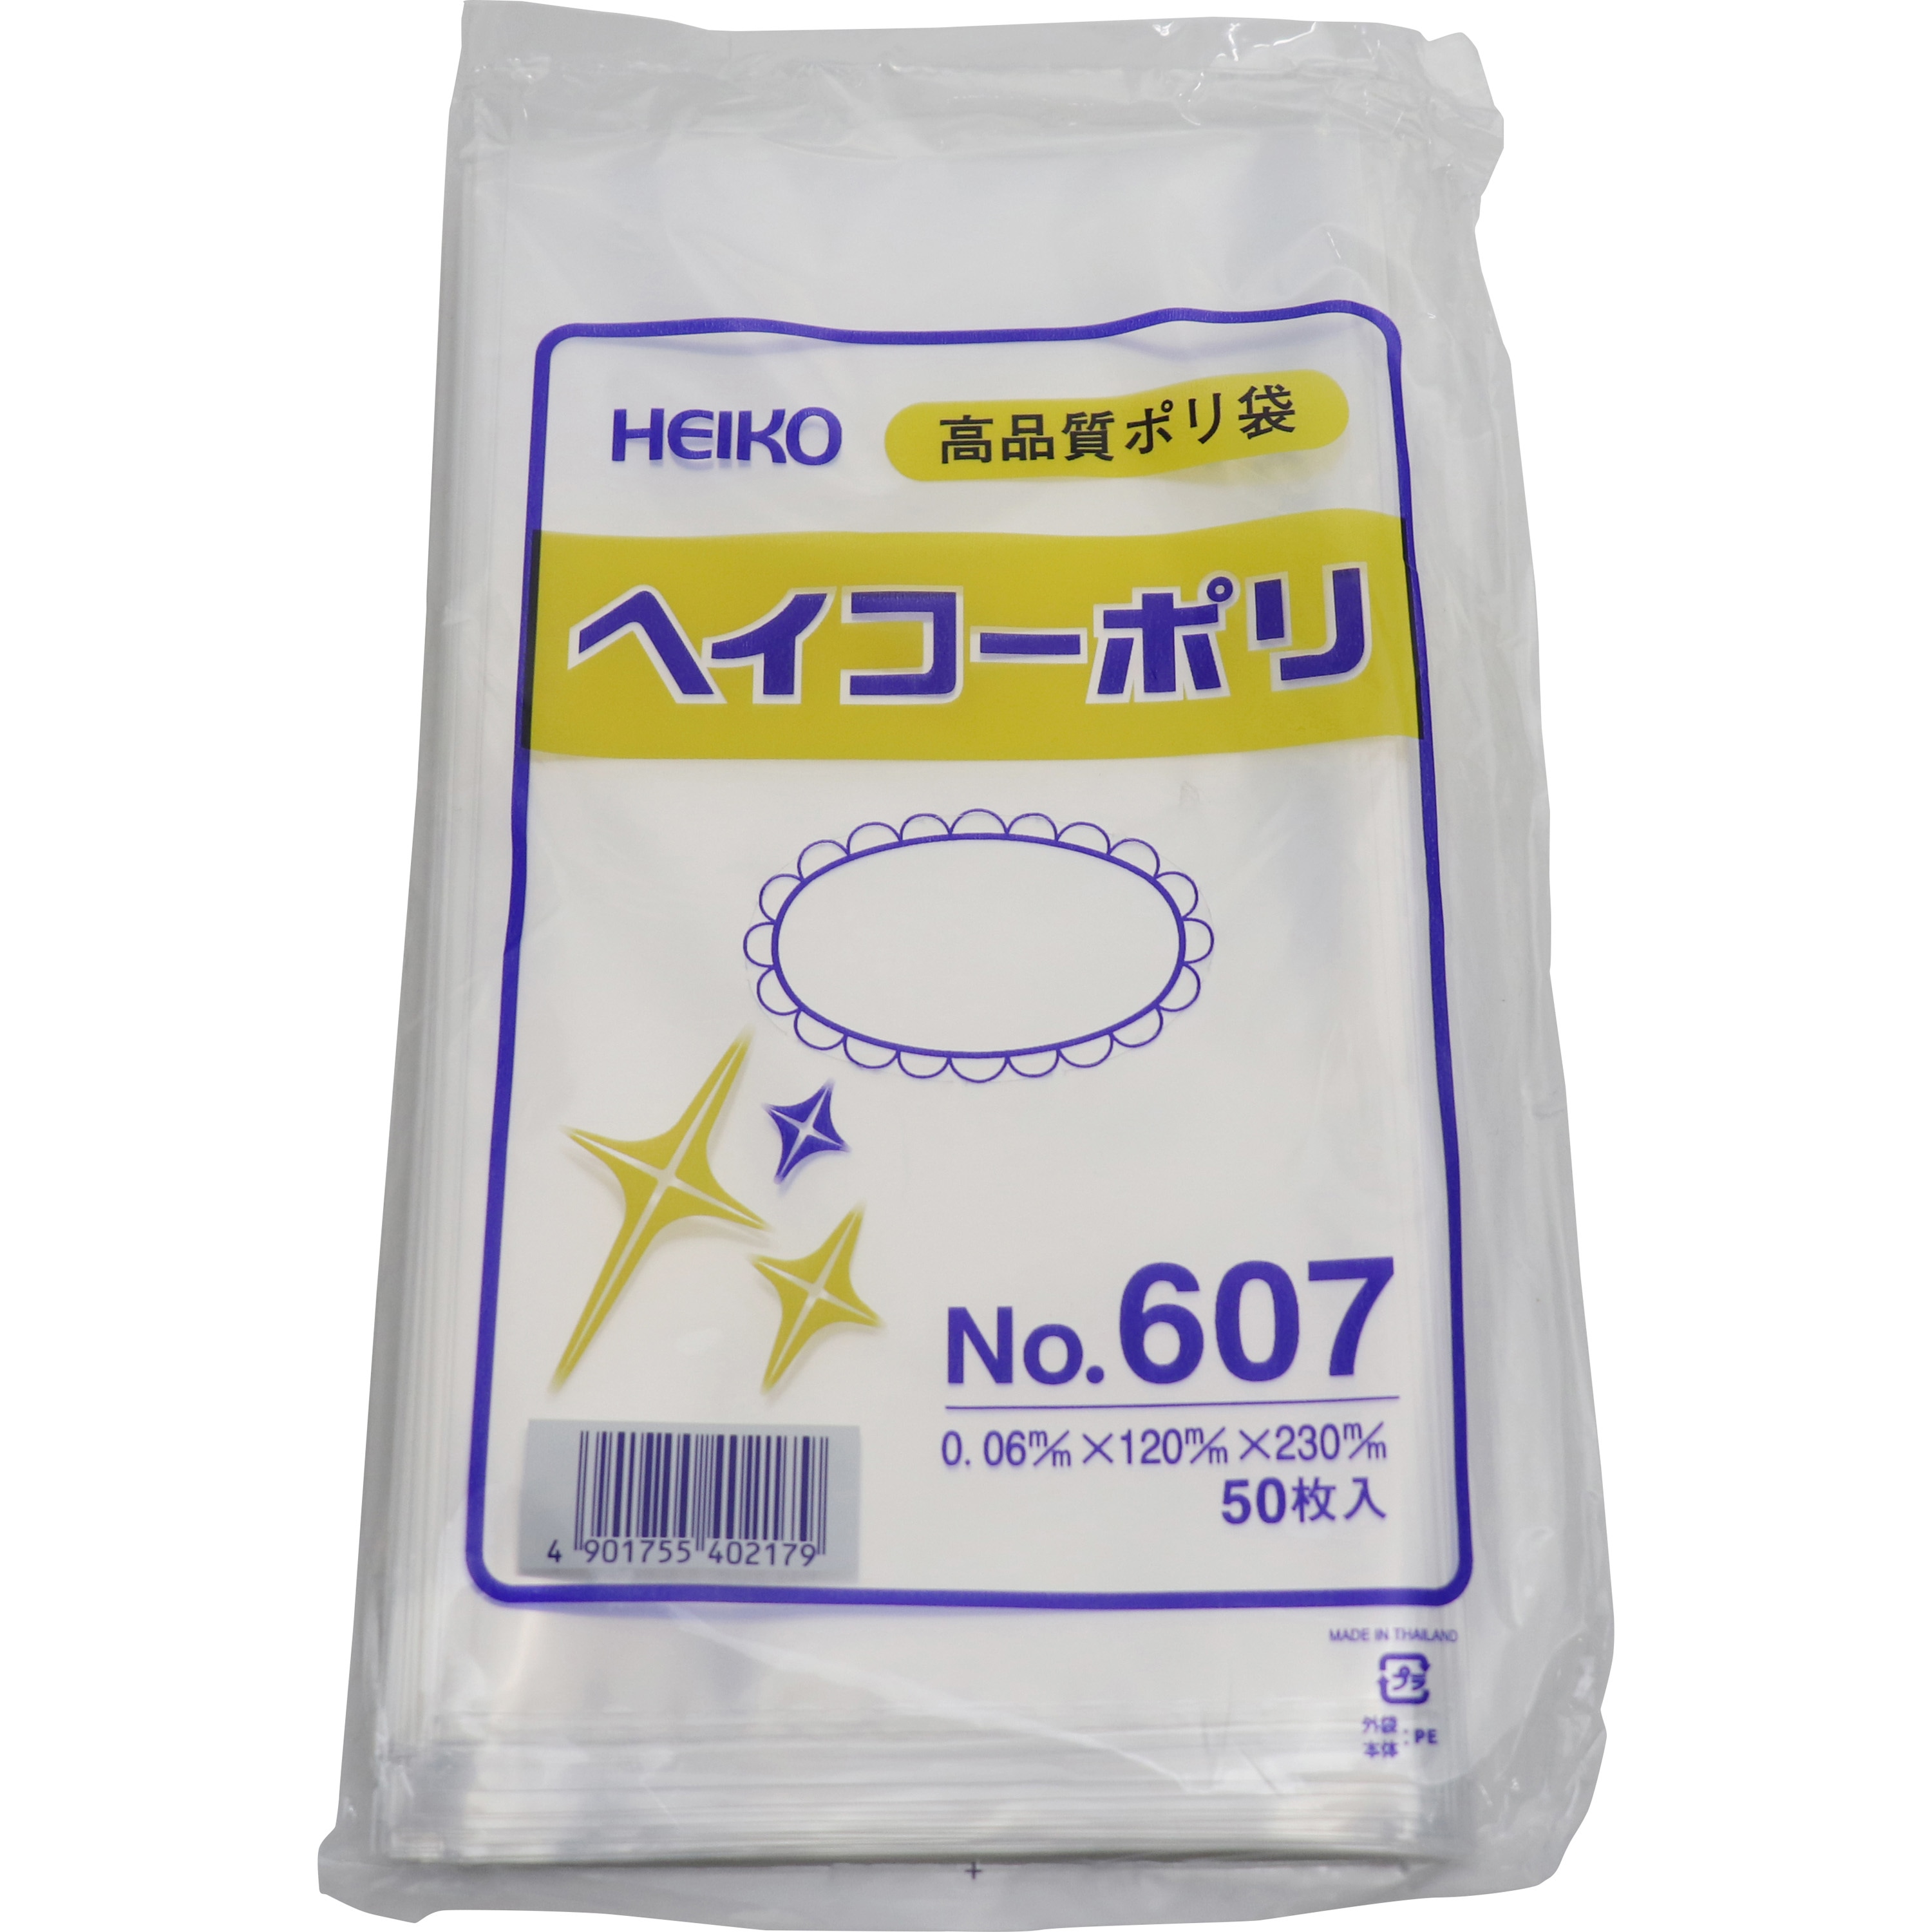 ポリエチレン袋0.06mm 透明色 適合規格食品衛生法適合 サイズ(号)7 1袋(50枚)